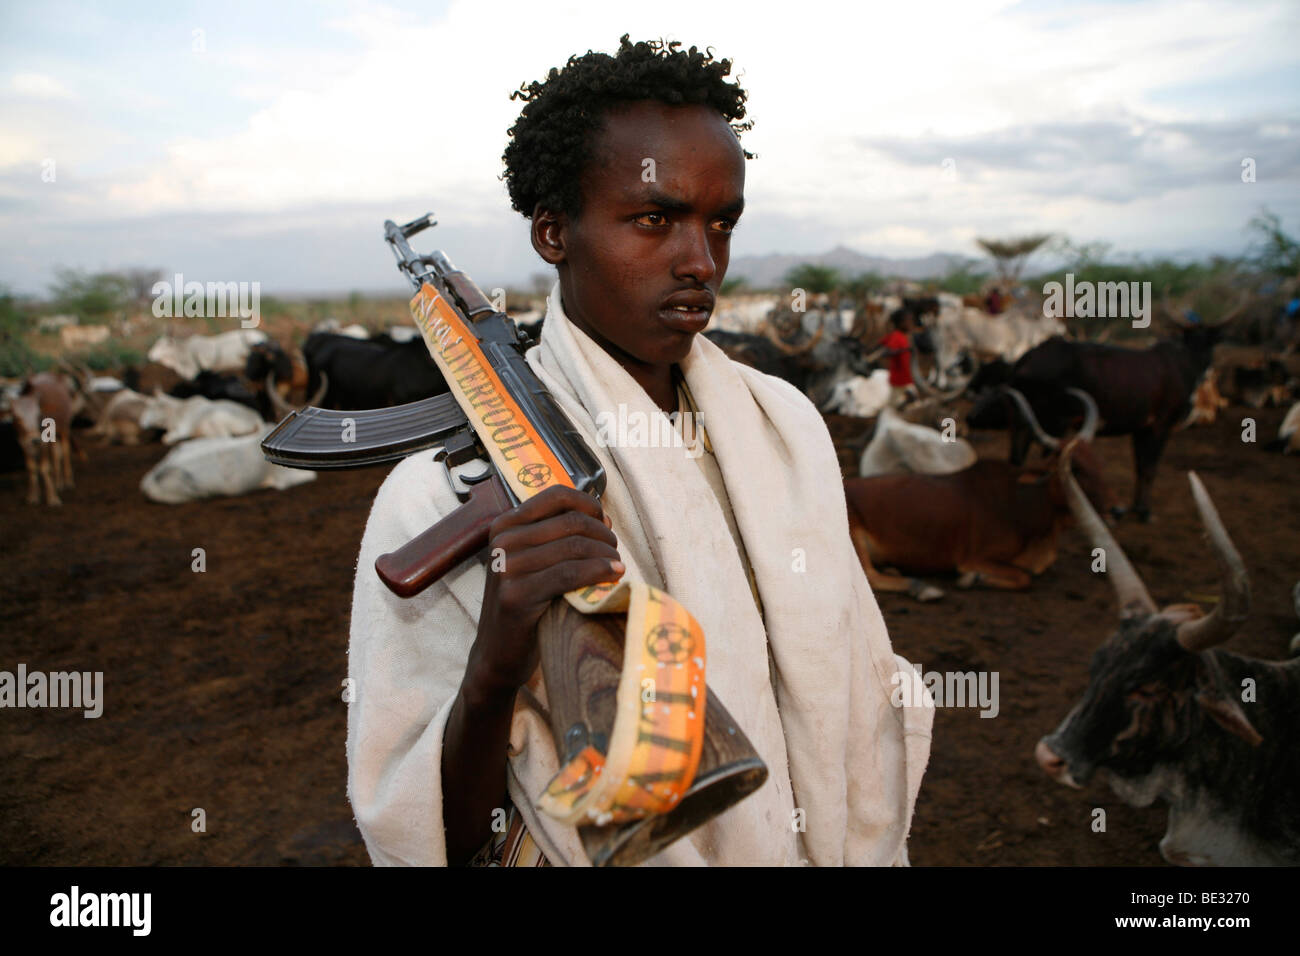 Popolo etiope che vivono nel nord del paese sono legati al popolo somalo. Essi sono nomadi e vivono da allevamento di bestiame. Foto Stock